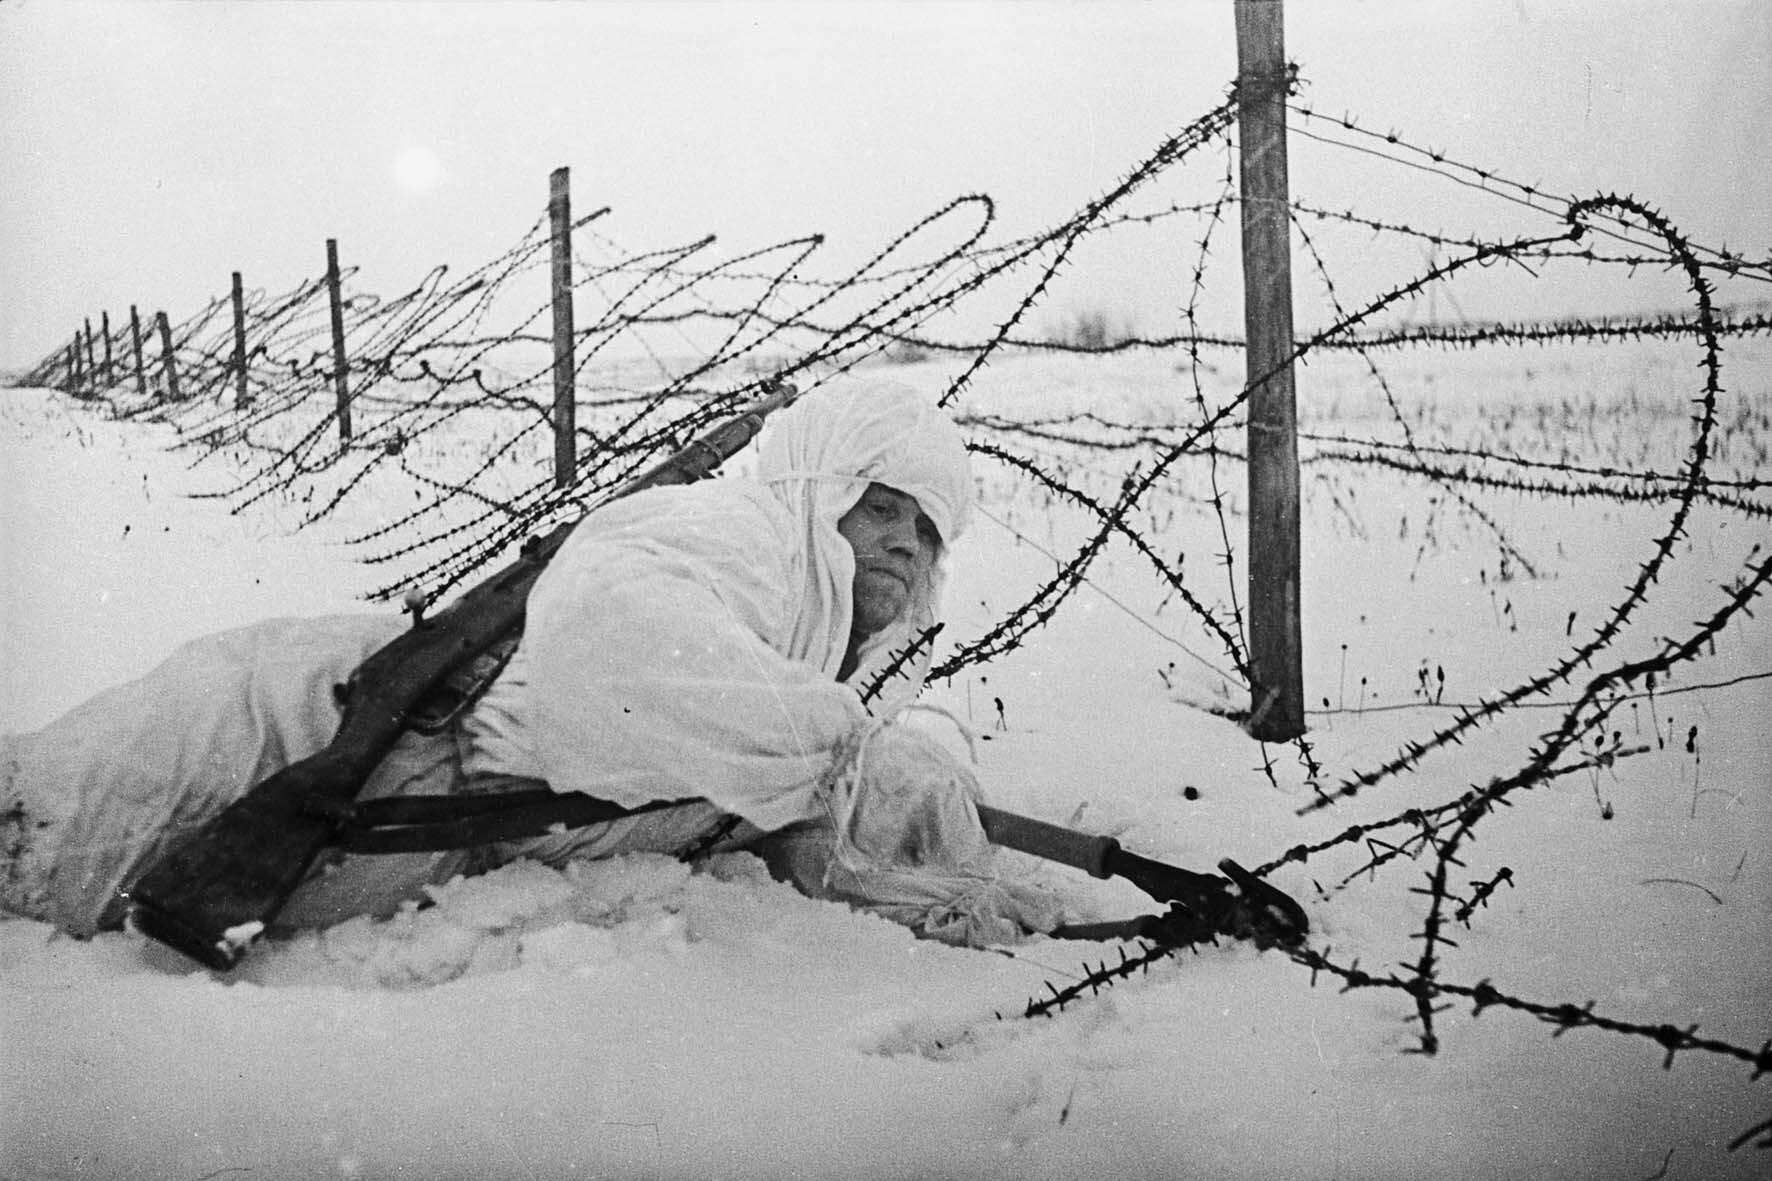 Fotografie: Pionier durchtrennt einen Stacheldrahtverhau, Kalininer Front, Februar 1942 (Museum Berlin-Karlshorst RR-P)